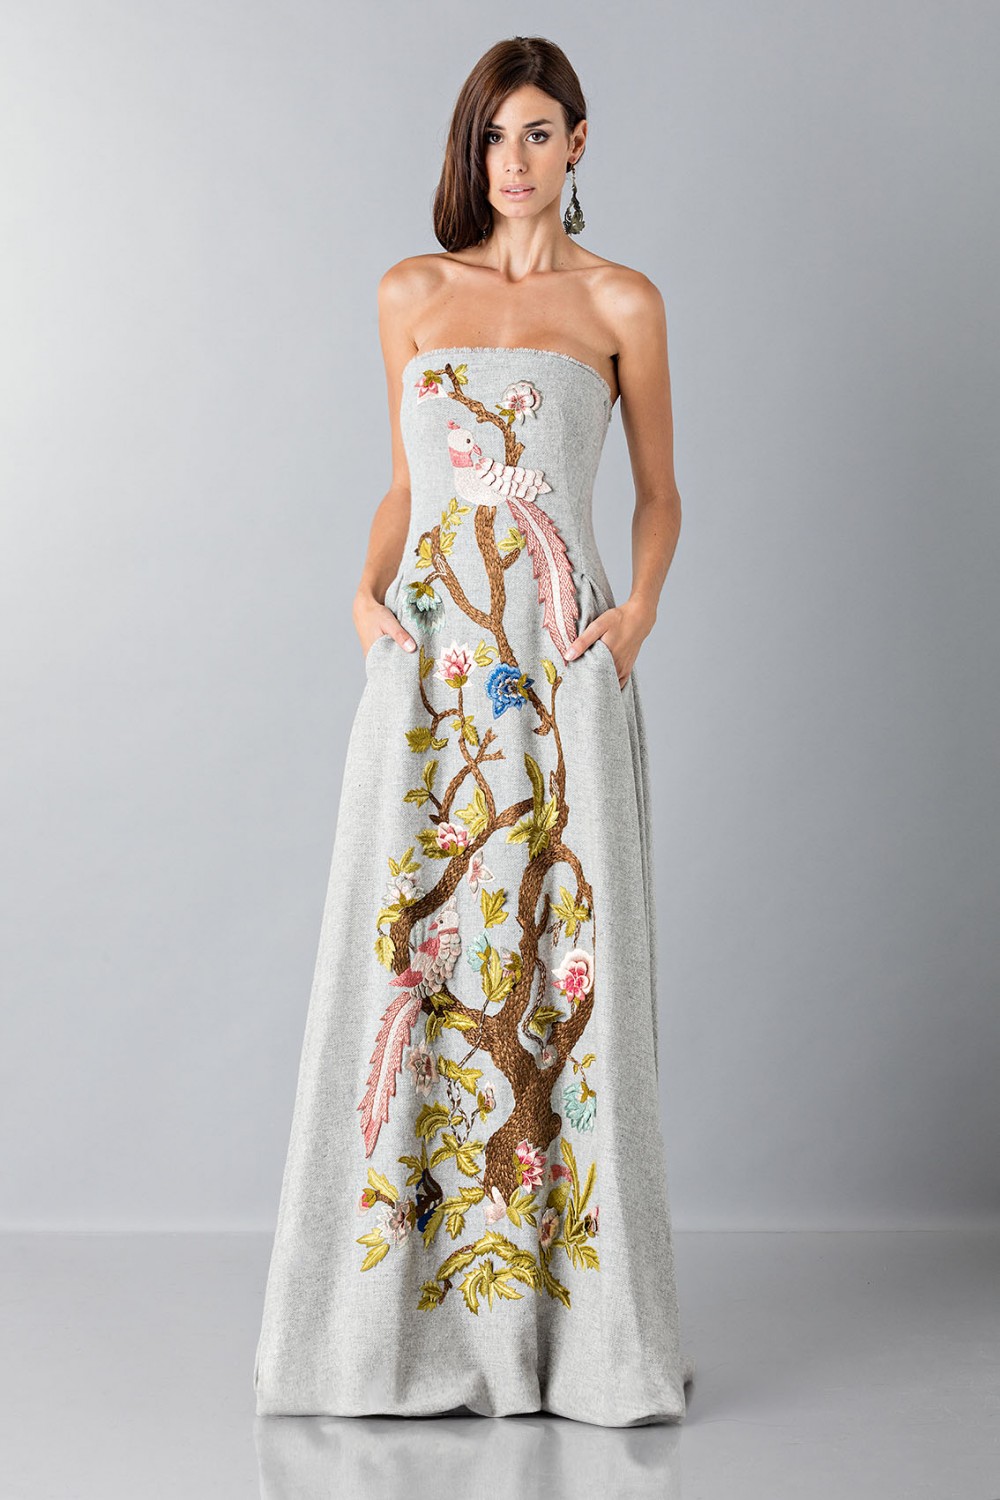 Vendita Abbigliamento Usato FIrmato - Gray bustier with floral themed applique - Alberta Ferretti - Drexcode -3